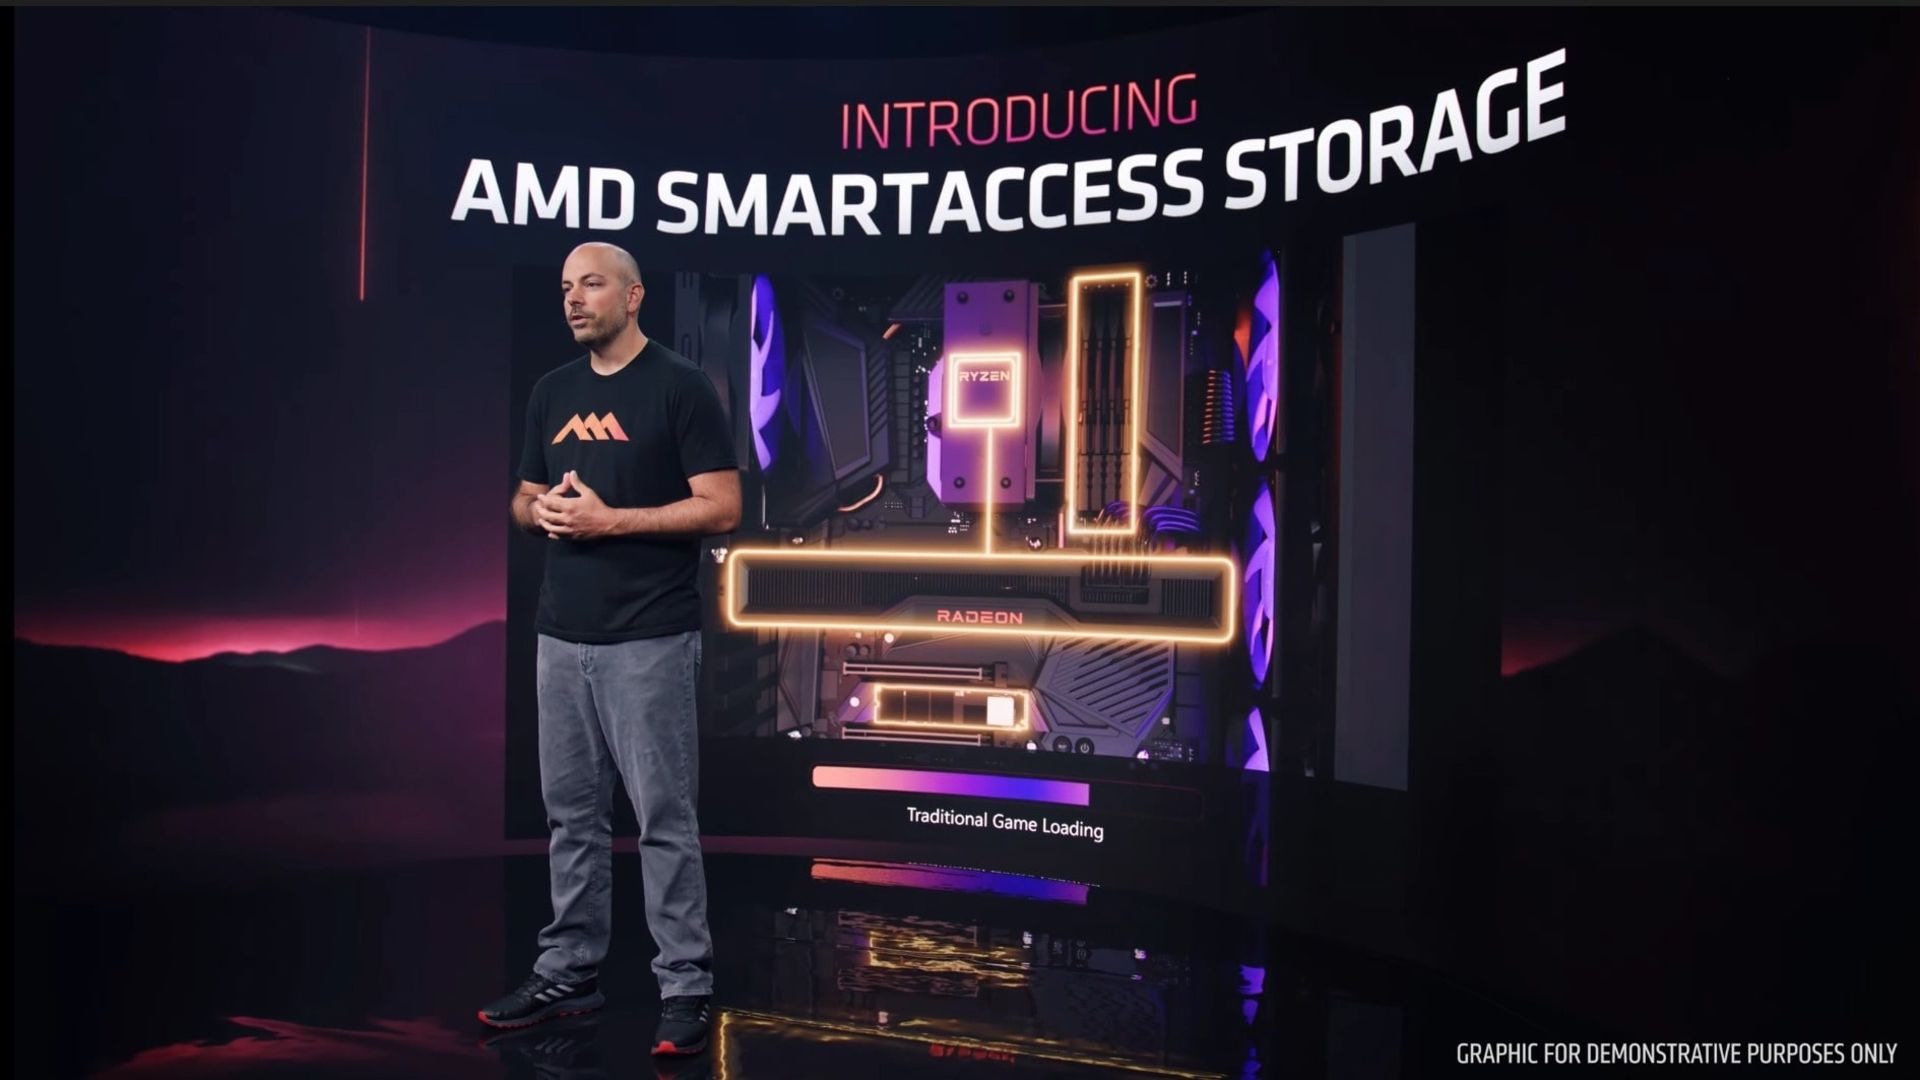 فناوری Smart Access Storage شرکت AMD